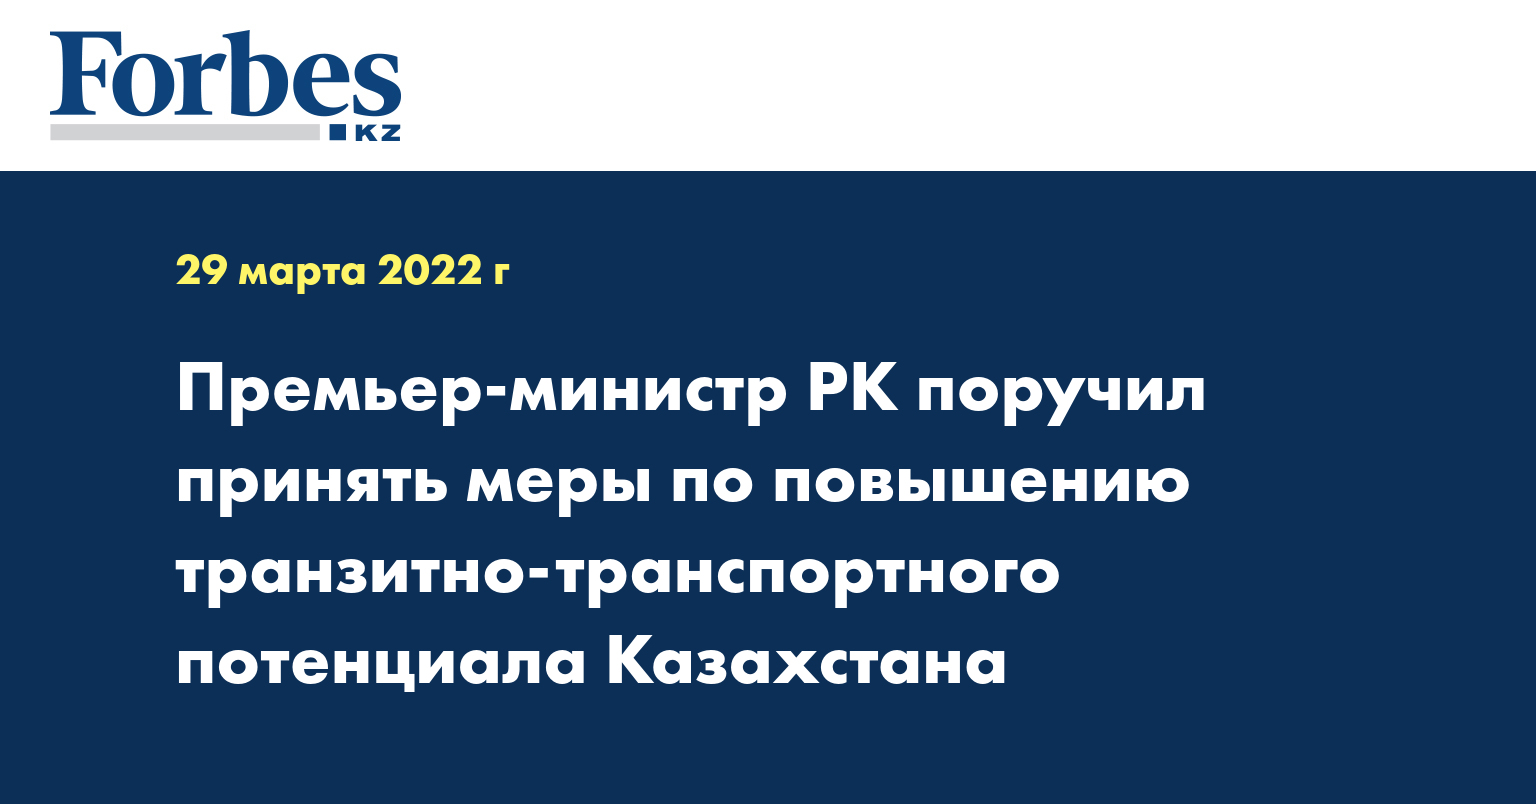 Премьер-министр РК поручил принять меры по повышению транзитно-транспортного потенциала Казахстана  